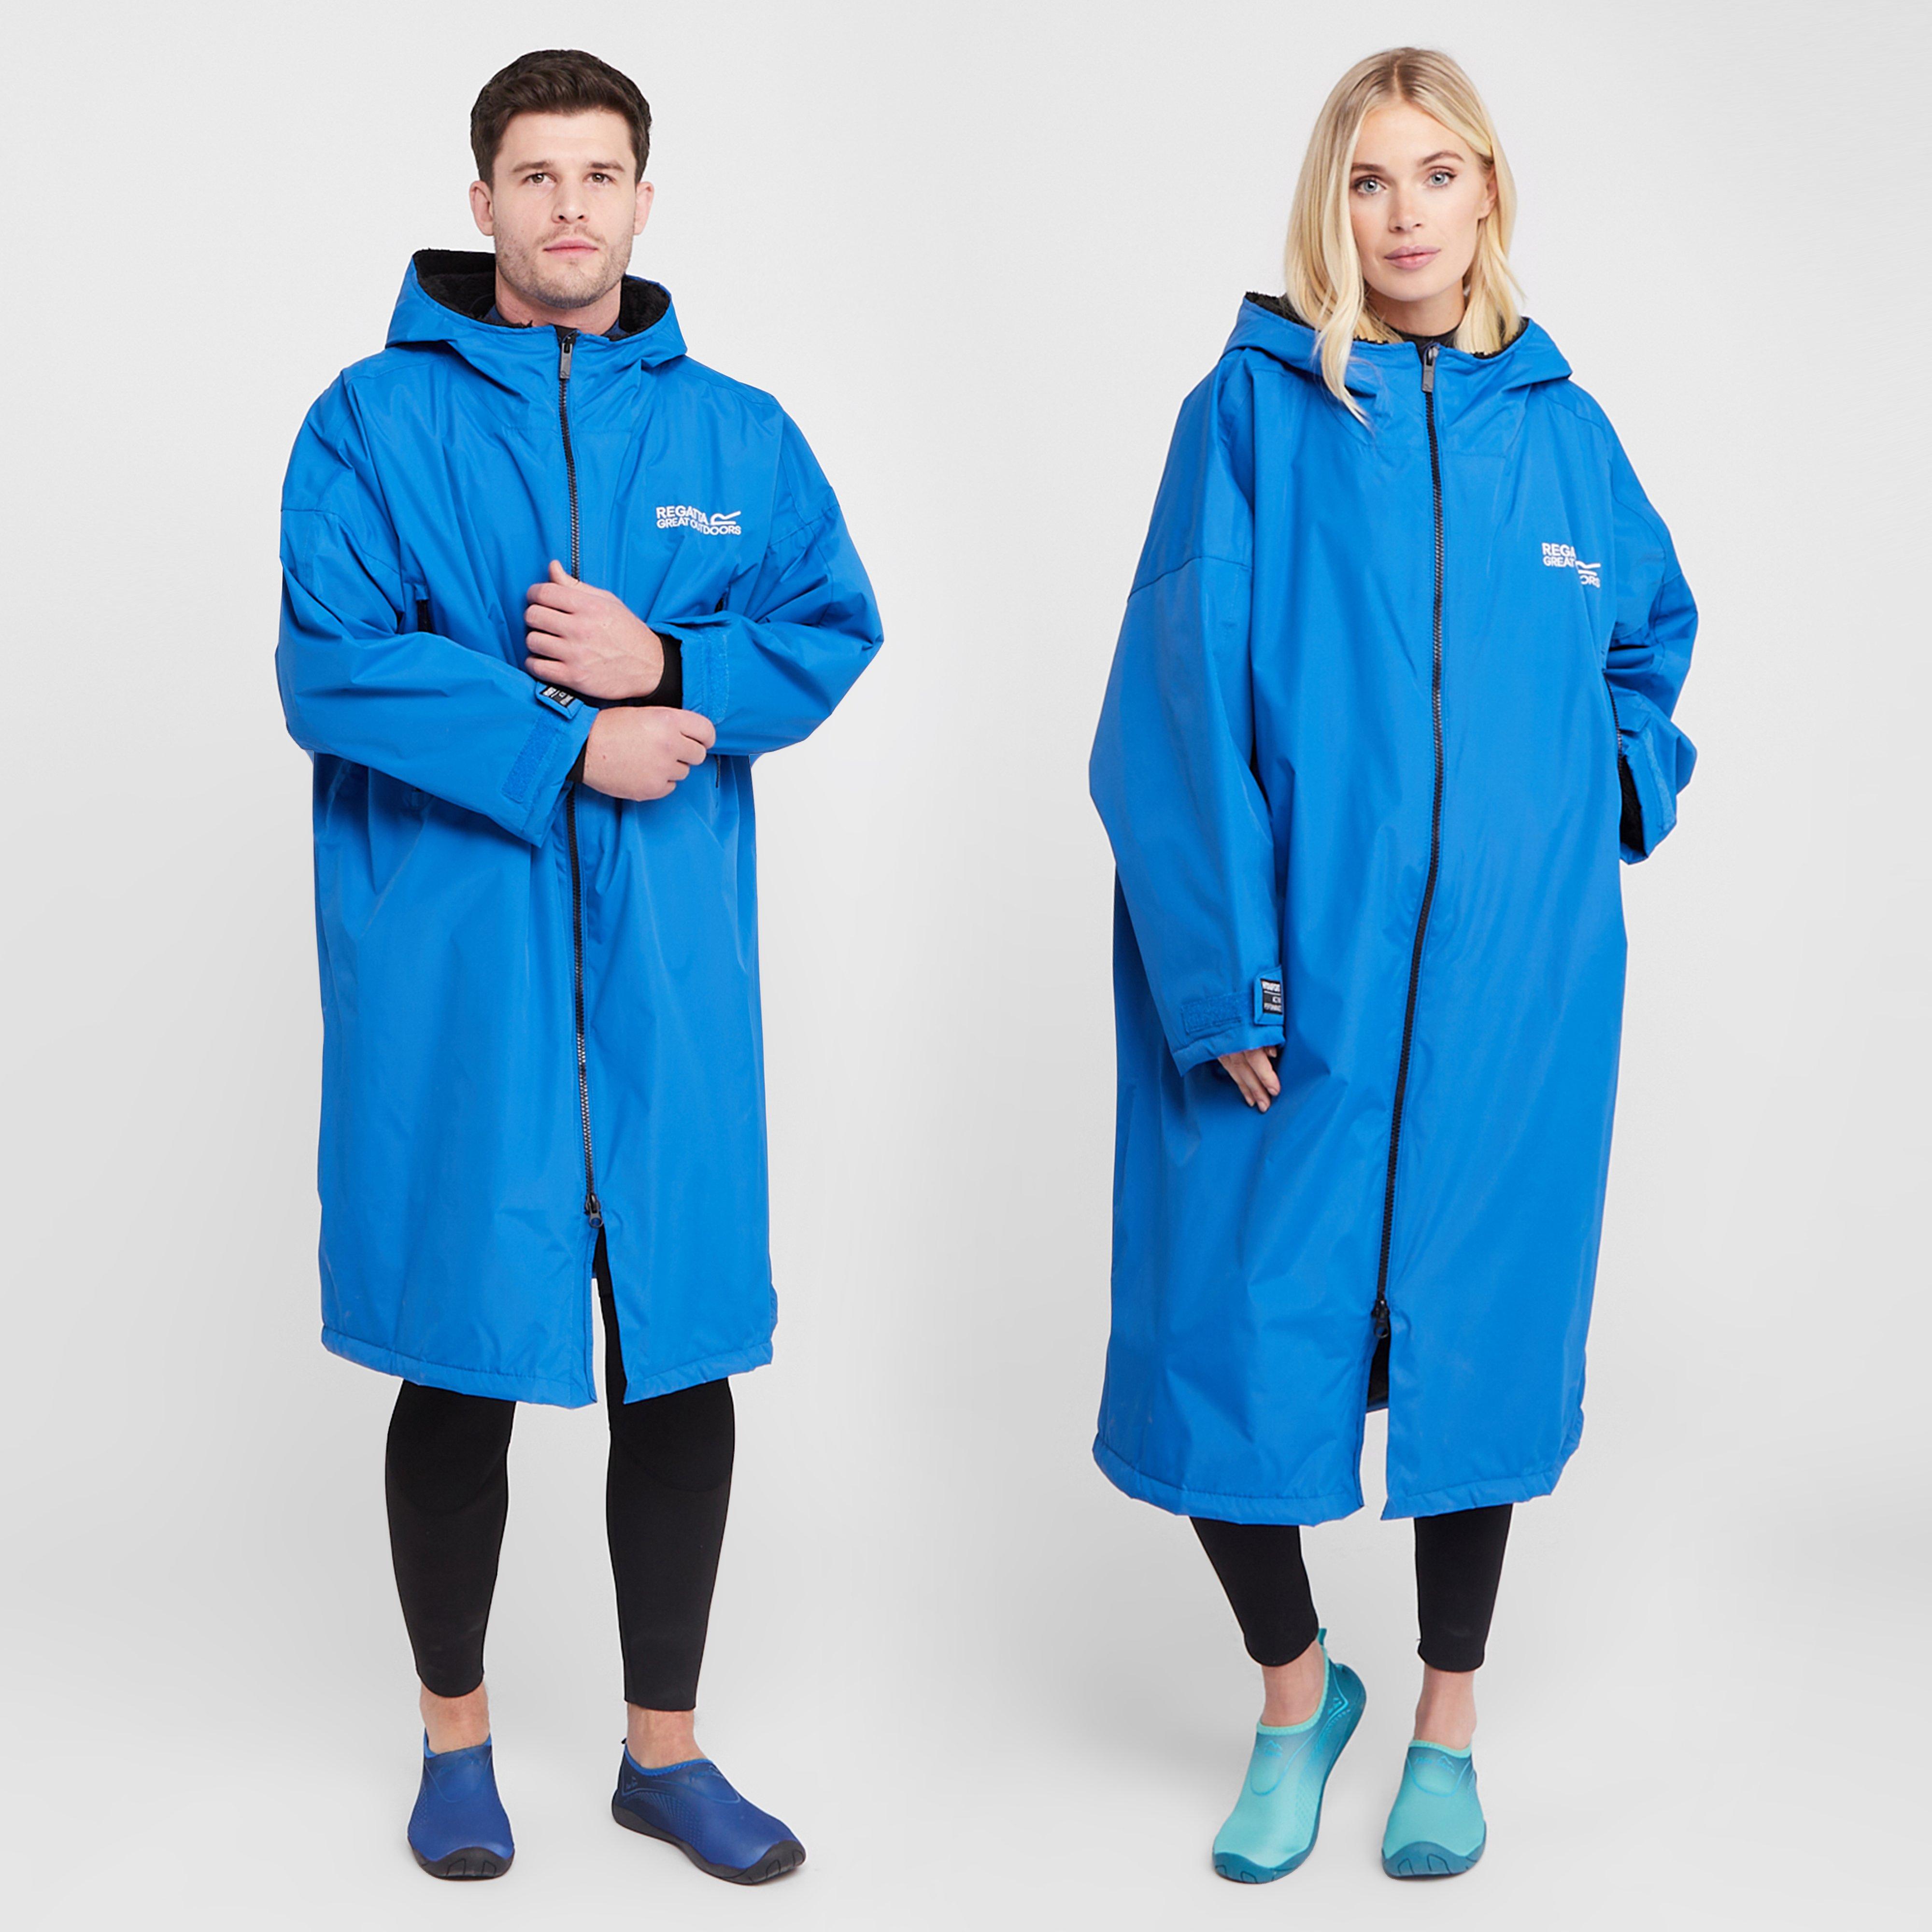 Regatta Regatta Adults Waterproof Robe Oxford Blue - Mbl, MBL